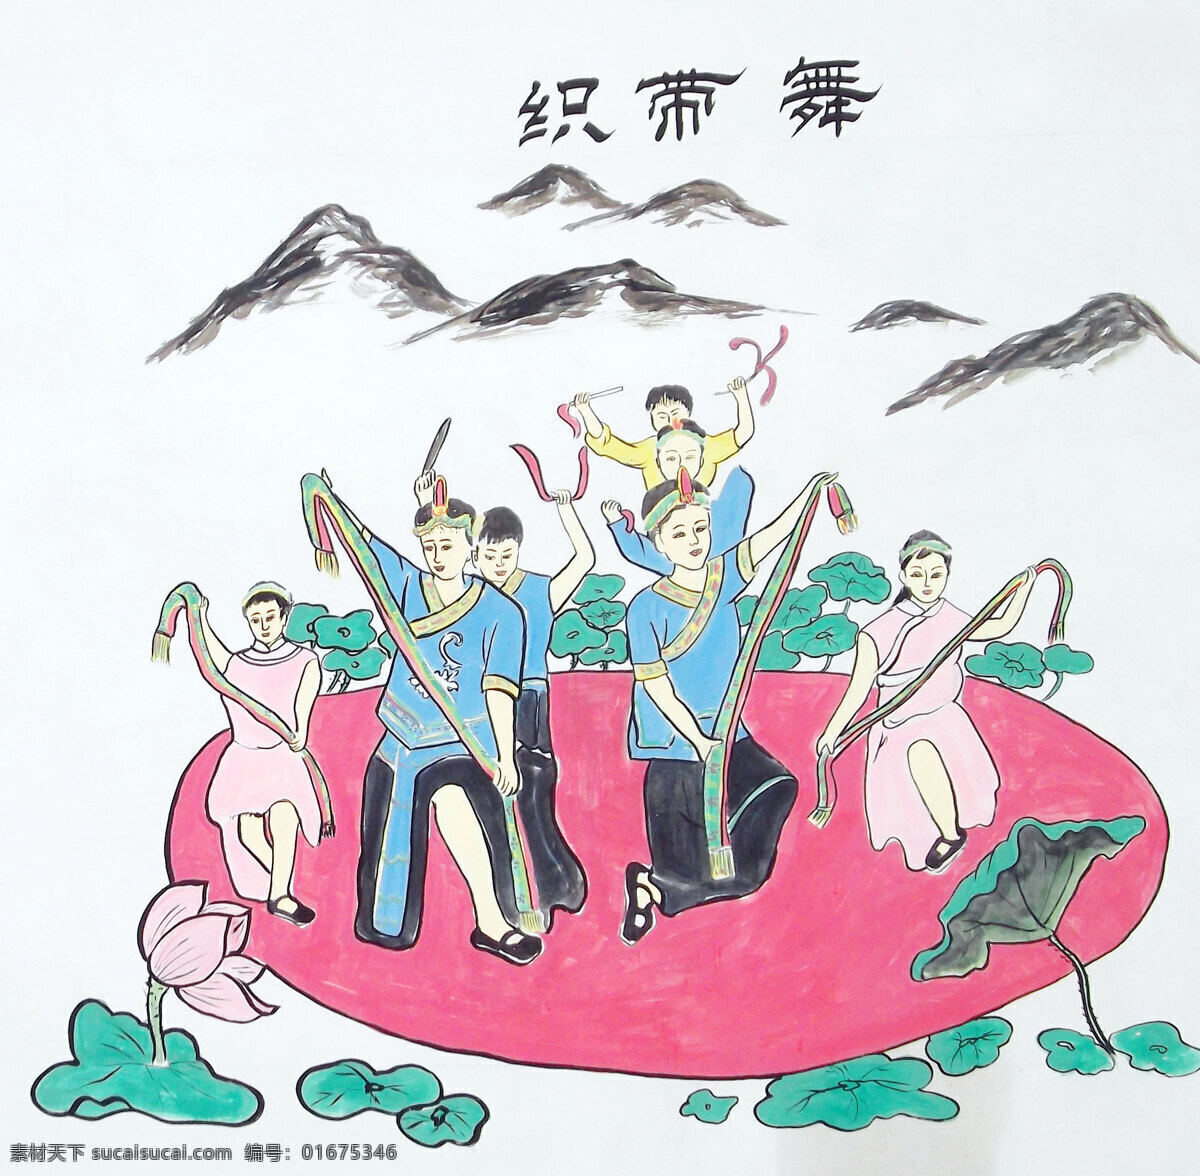 畲族织带舞 畲族 织带舞 舞蹈 少数民族 手绘 荷花 传统文化 文化艺术